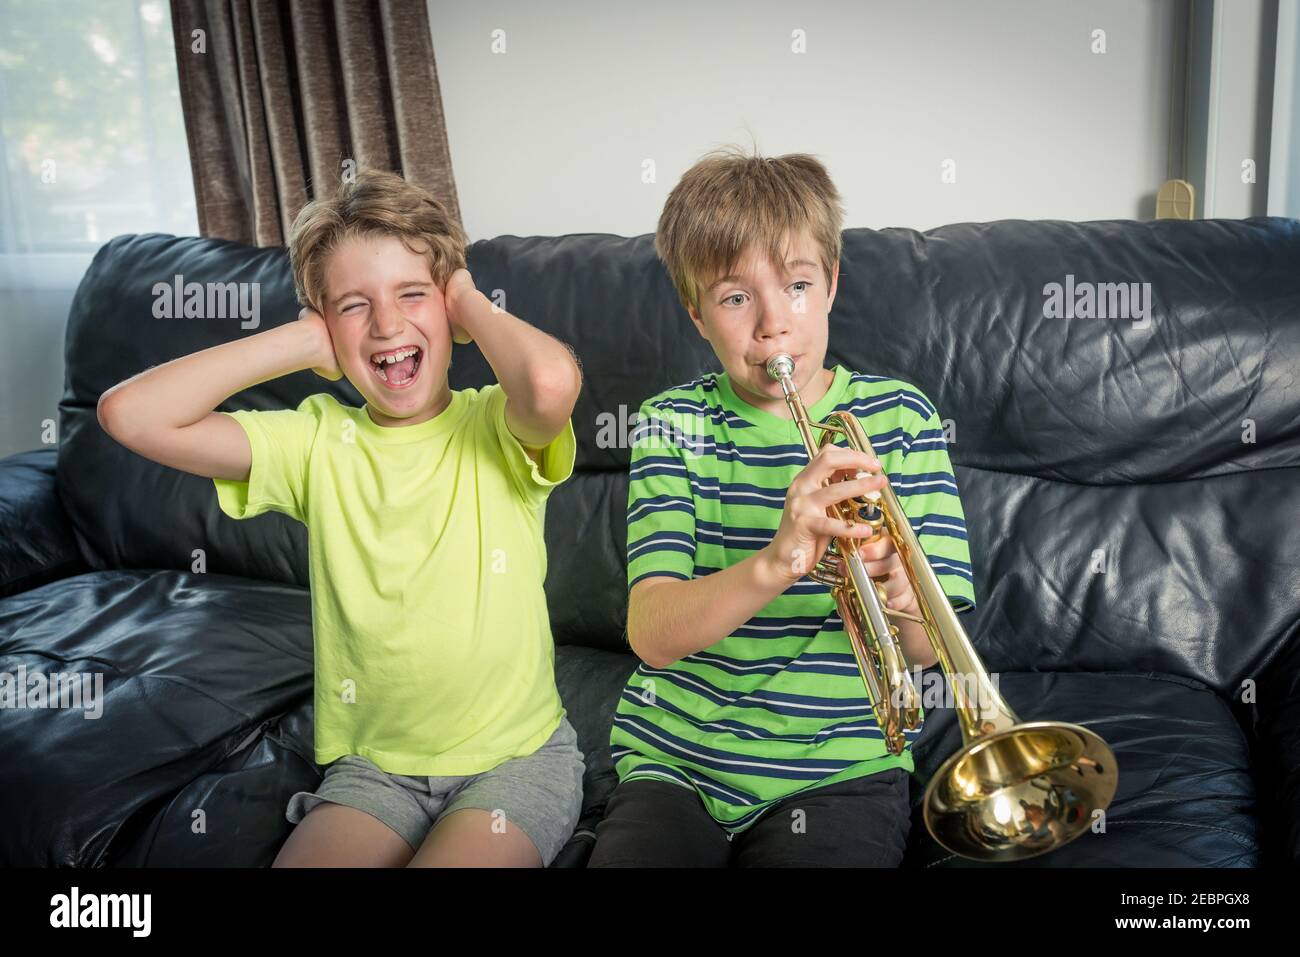 Due bambini seduti su un divano. Uno sta suonando una tromba e l'altro bambino infastidito sta coprendo le orecchie con le mani Foto Stock